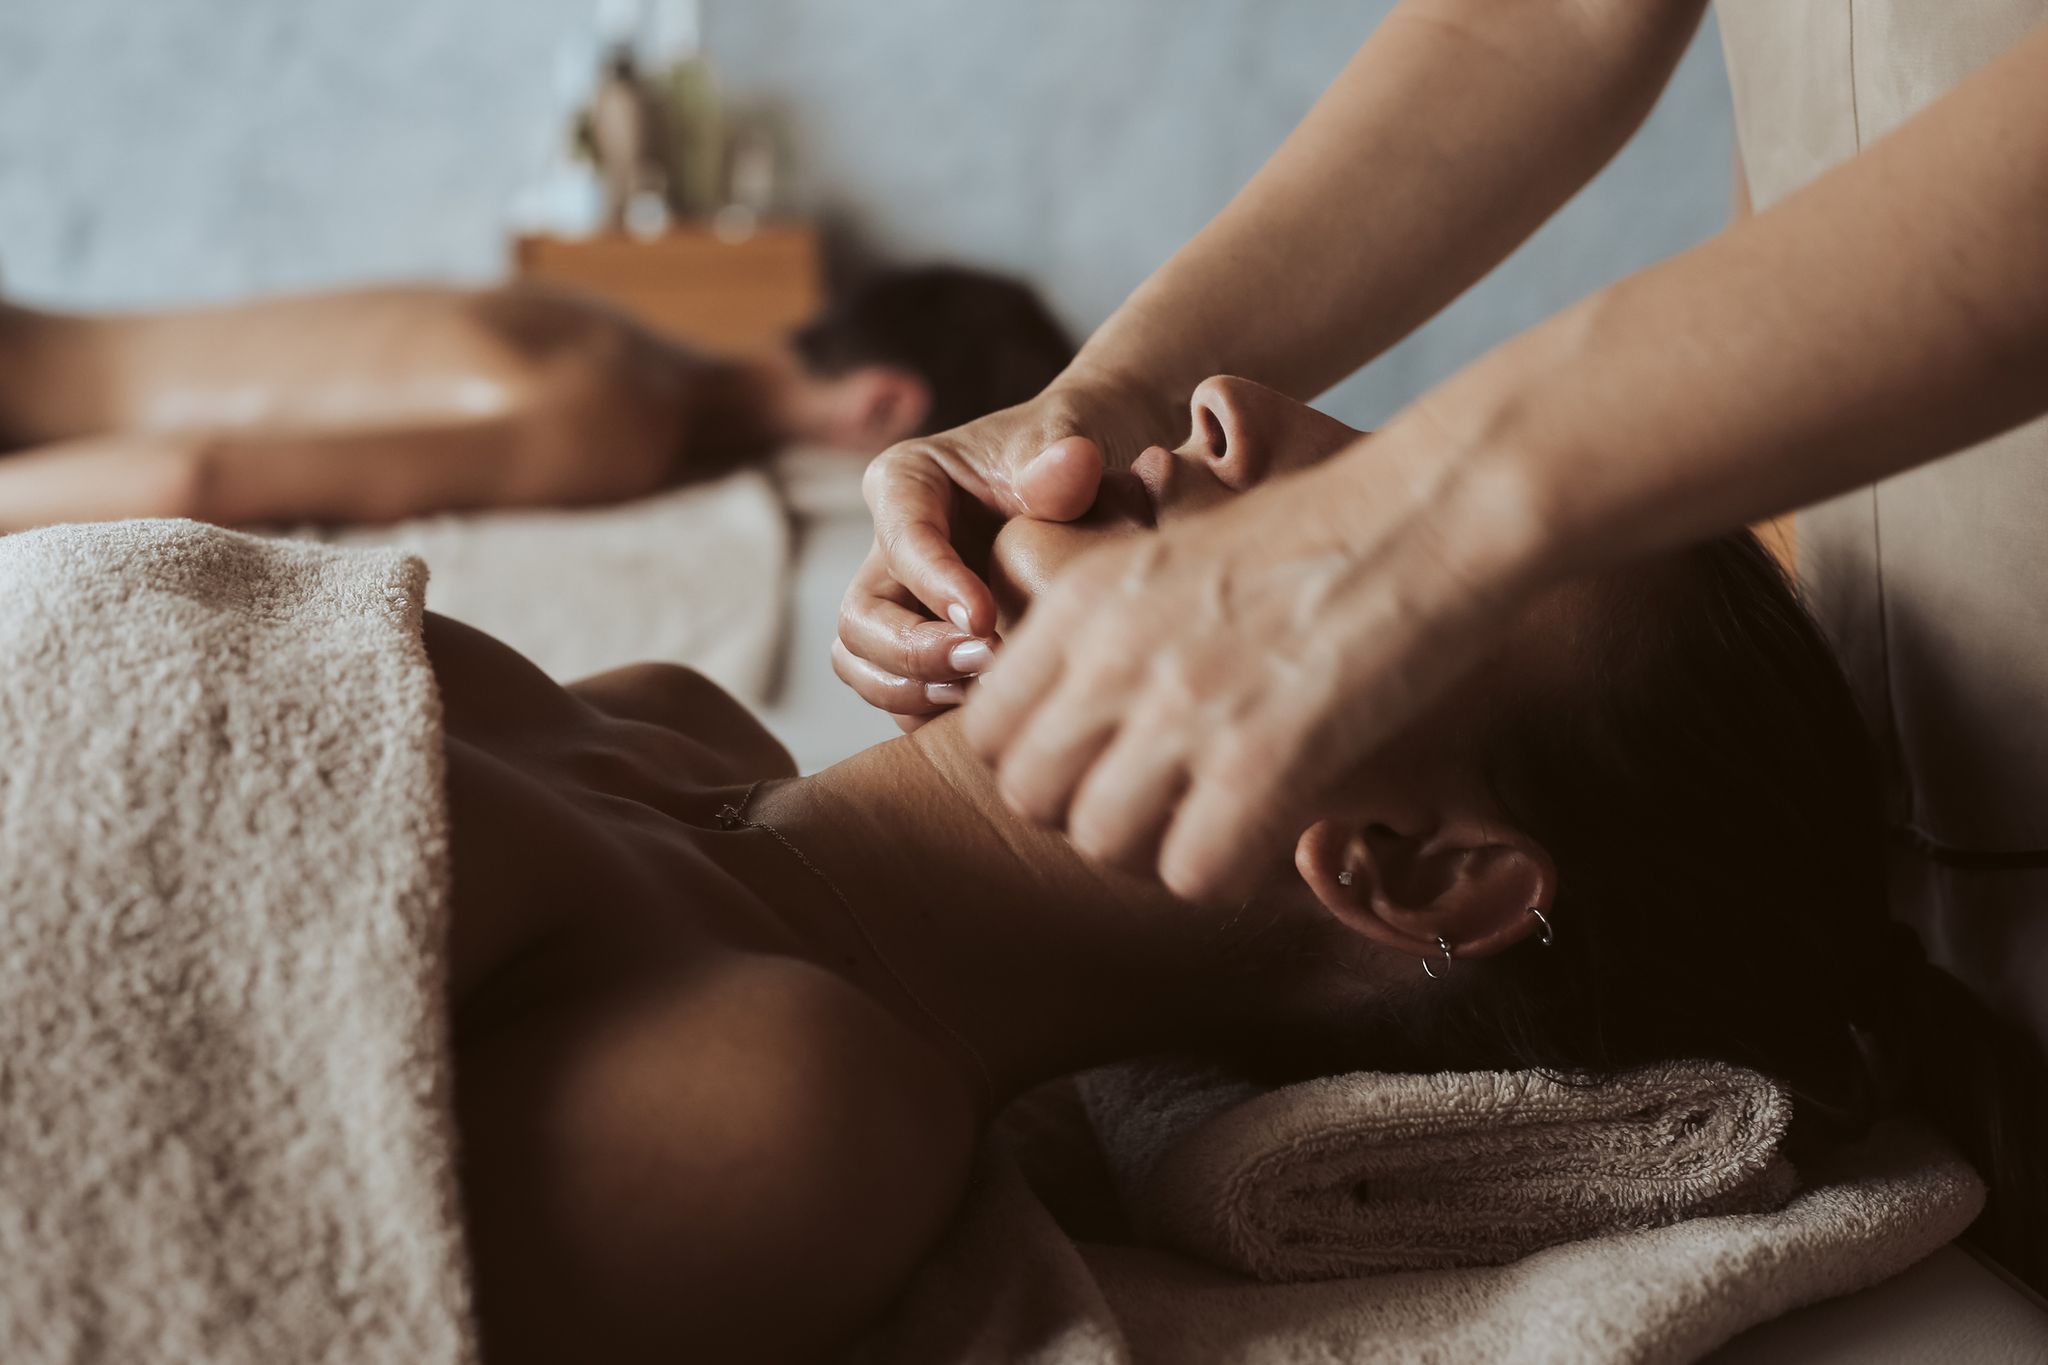 massaggio shiatsu benefici